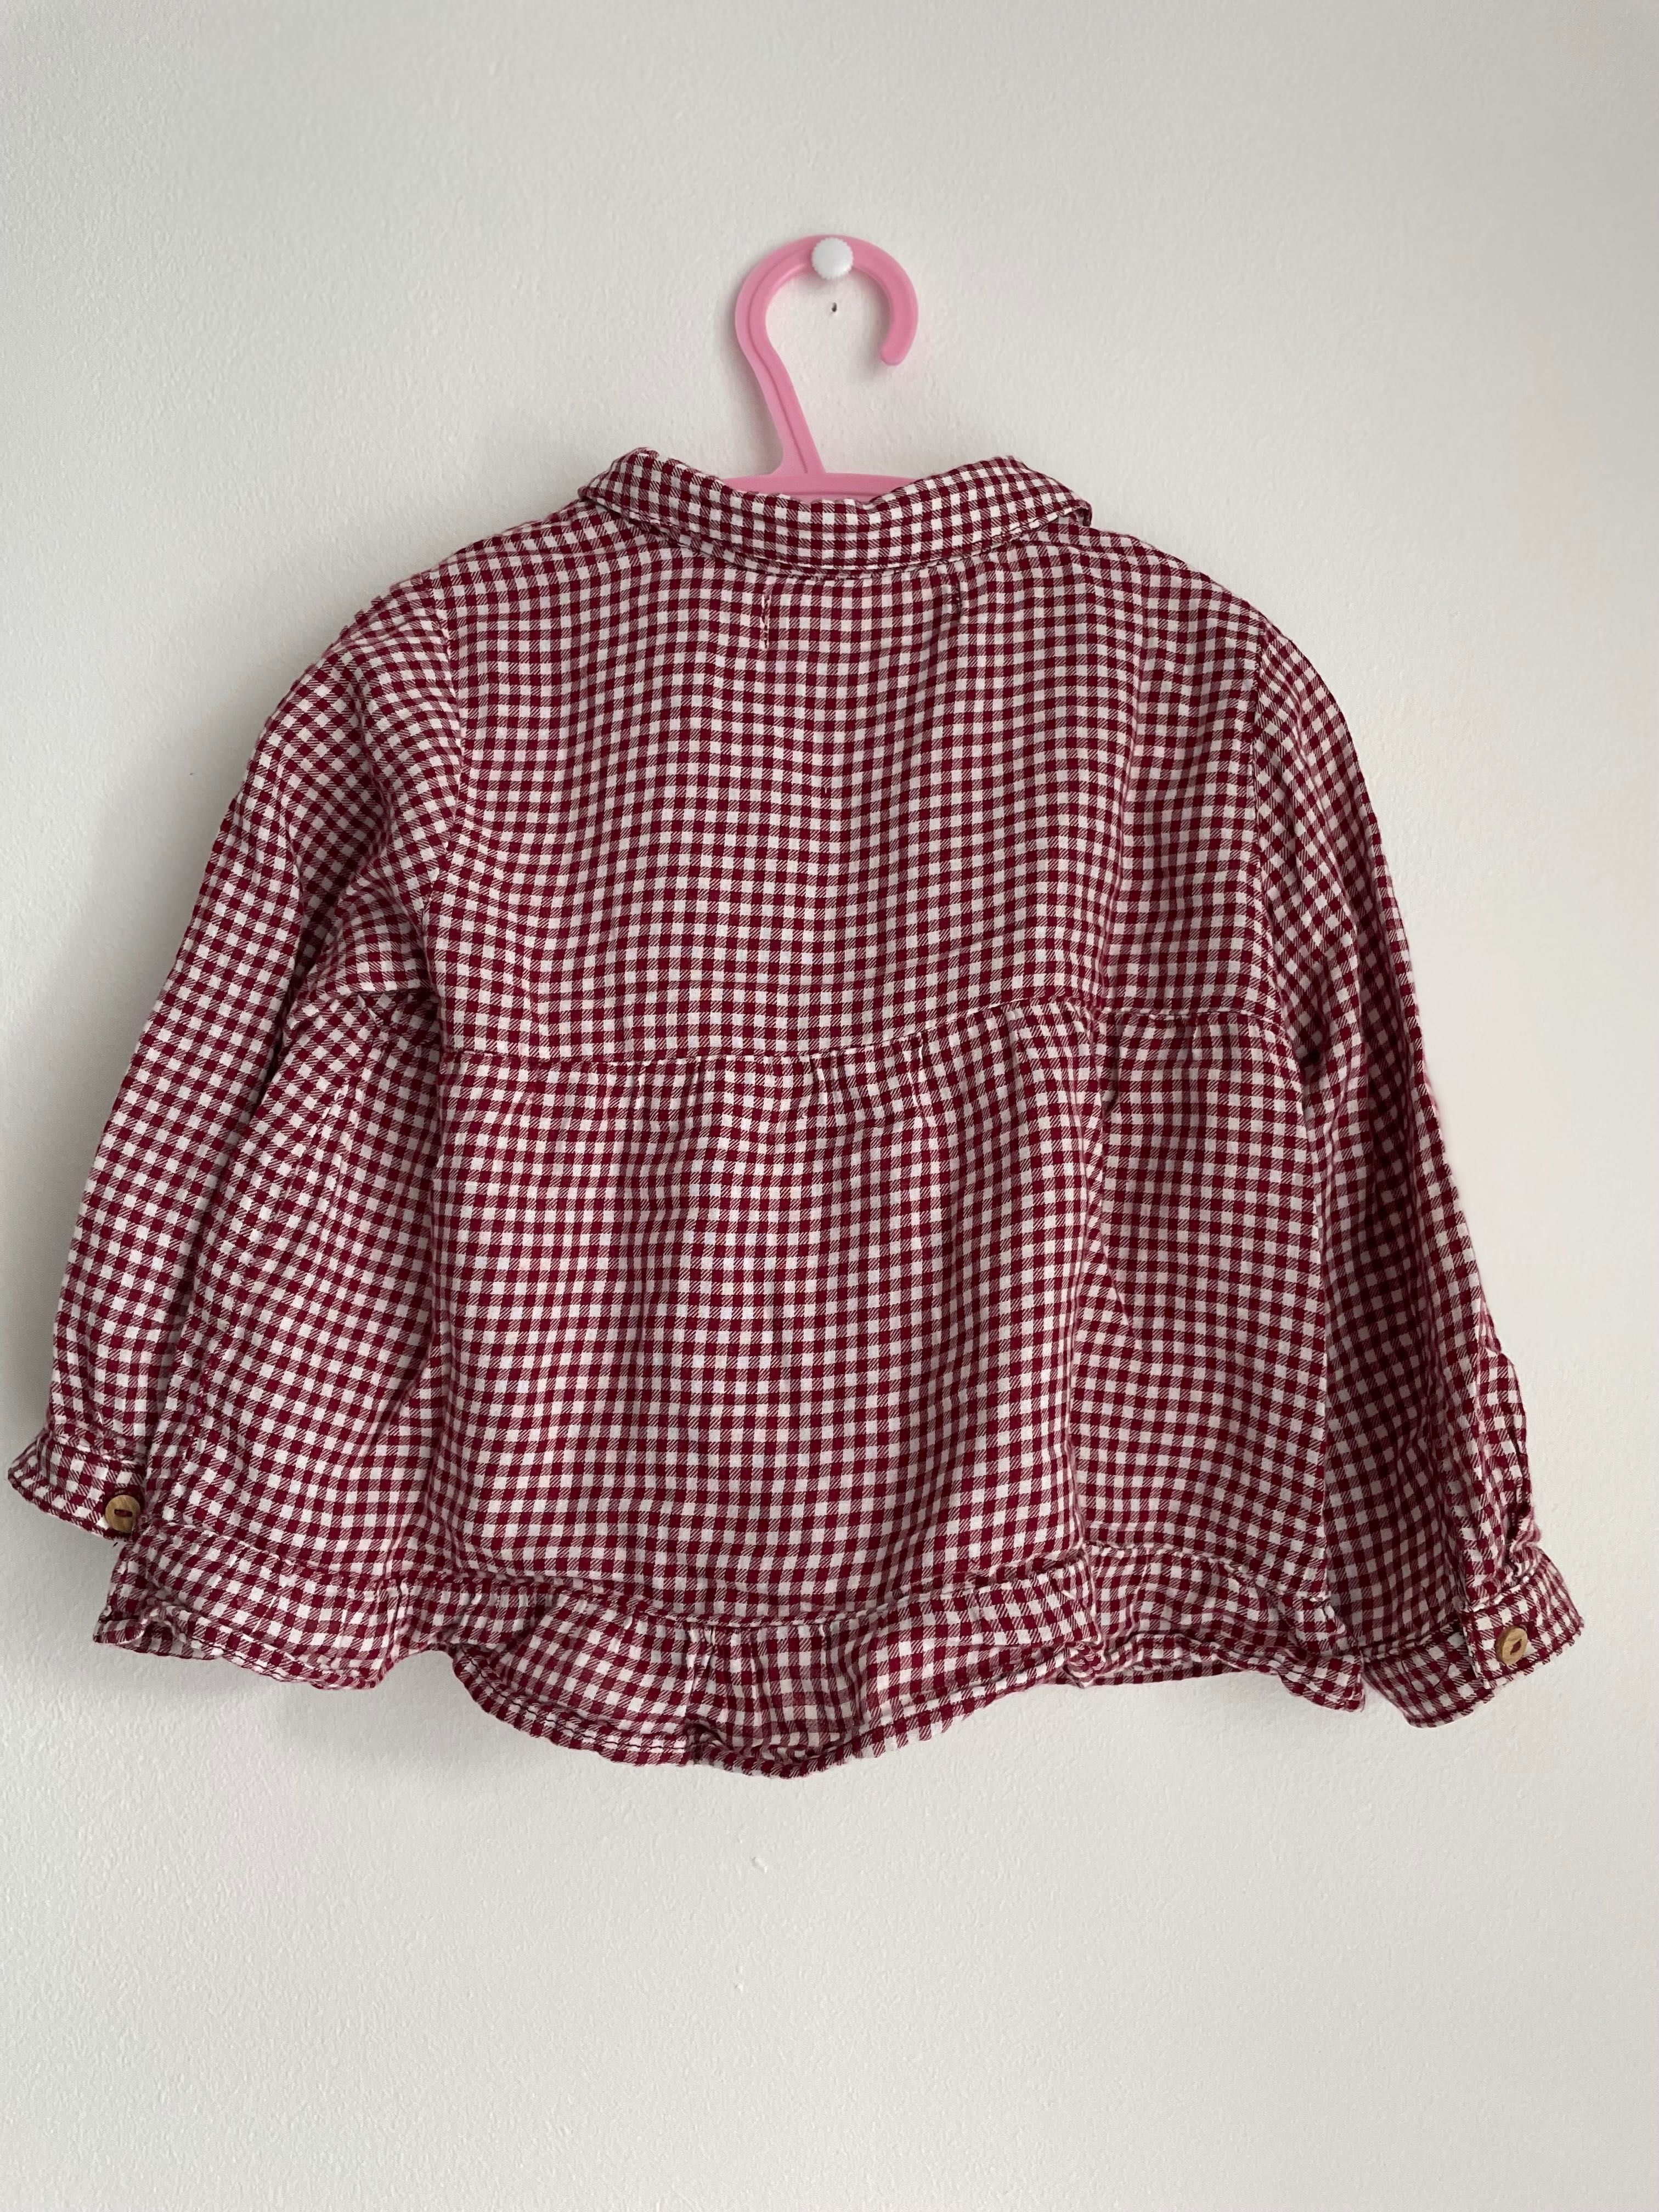 Koszula na guziki, Zara roz. 86